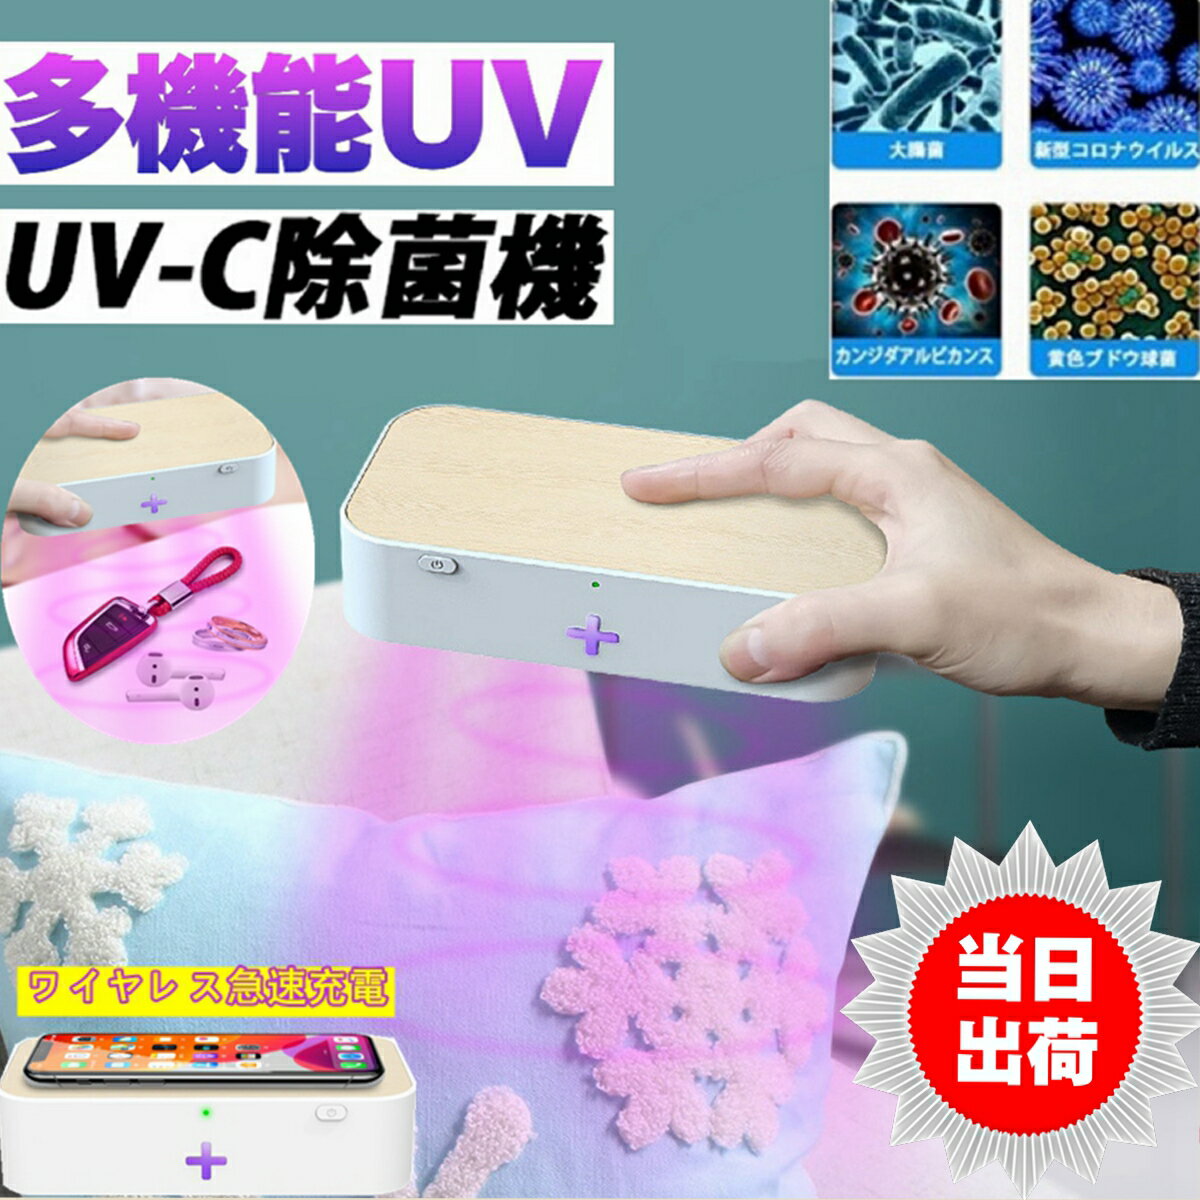 スマホ UV ライト 殺菌 消毒ボックス マスク 99.9% ウイルス 紫外線 除去 除菌 ケース 消毒ボックス 携帯 メガネ uvbox家庭オフィス用